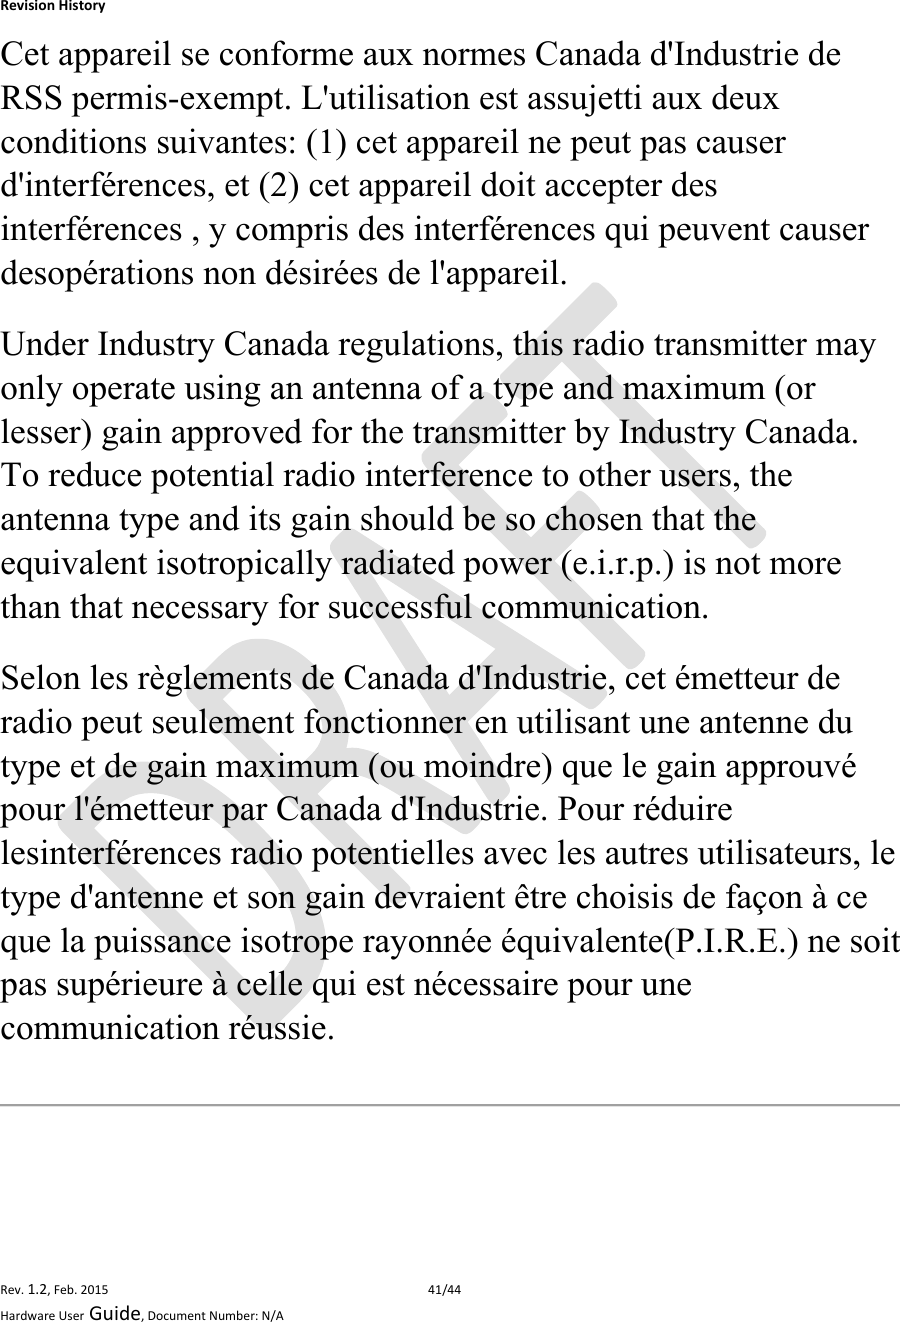 RevisionHistoryRev.1.2,Feb.201541/44HardwareUserGuide,DocumentNumber:N/ACet appareil se conforme aux normes Canada d&apos;Industrie de RSS permis-exempt. L&apos;utilisation est assujetti aux deux conditions suivantes: (1) cet appareil ne peut pas causer d&apos;interférences, et (2) cet appareil doit accepter des interférences , y compris des interférences qui peuvent causer desopérations non désirées de l&apos;appareil. Under Industry Canada regulations, this radio transmitter may only operate using an antenna of a type and maximum (or lesser) gain approved for the transmitter by Industry Canada. To reduce potential radio interference to other users, the antenna type and its gain should be so chosen that the equivalent isotropically radiated power (e.i.r.p.) is not more than that necessary for successful communication. Selon les règlements de Canada d&apos;Industrie, cet émetteur de radio peut seulement fonctionner en utilisant une antenne du type et de gain maximum (ou moindre) que le gain approuvé pour l&apos;émetteur par Canada d&apos;Industrie. Pour réduire lesinterférences radio potentielles avec les autres utilisateurs, le type d&apos;antenne et son gain devraient être choisis de façon à ce que la puissance isotrope rayonnée équivalente(P.I.R.E.) ne soit pas supérieure à celle qui est nécessaire pour une communication réussie. 